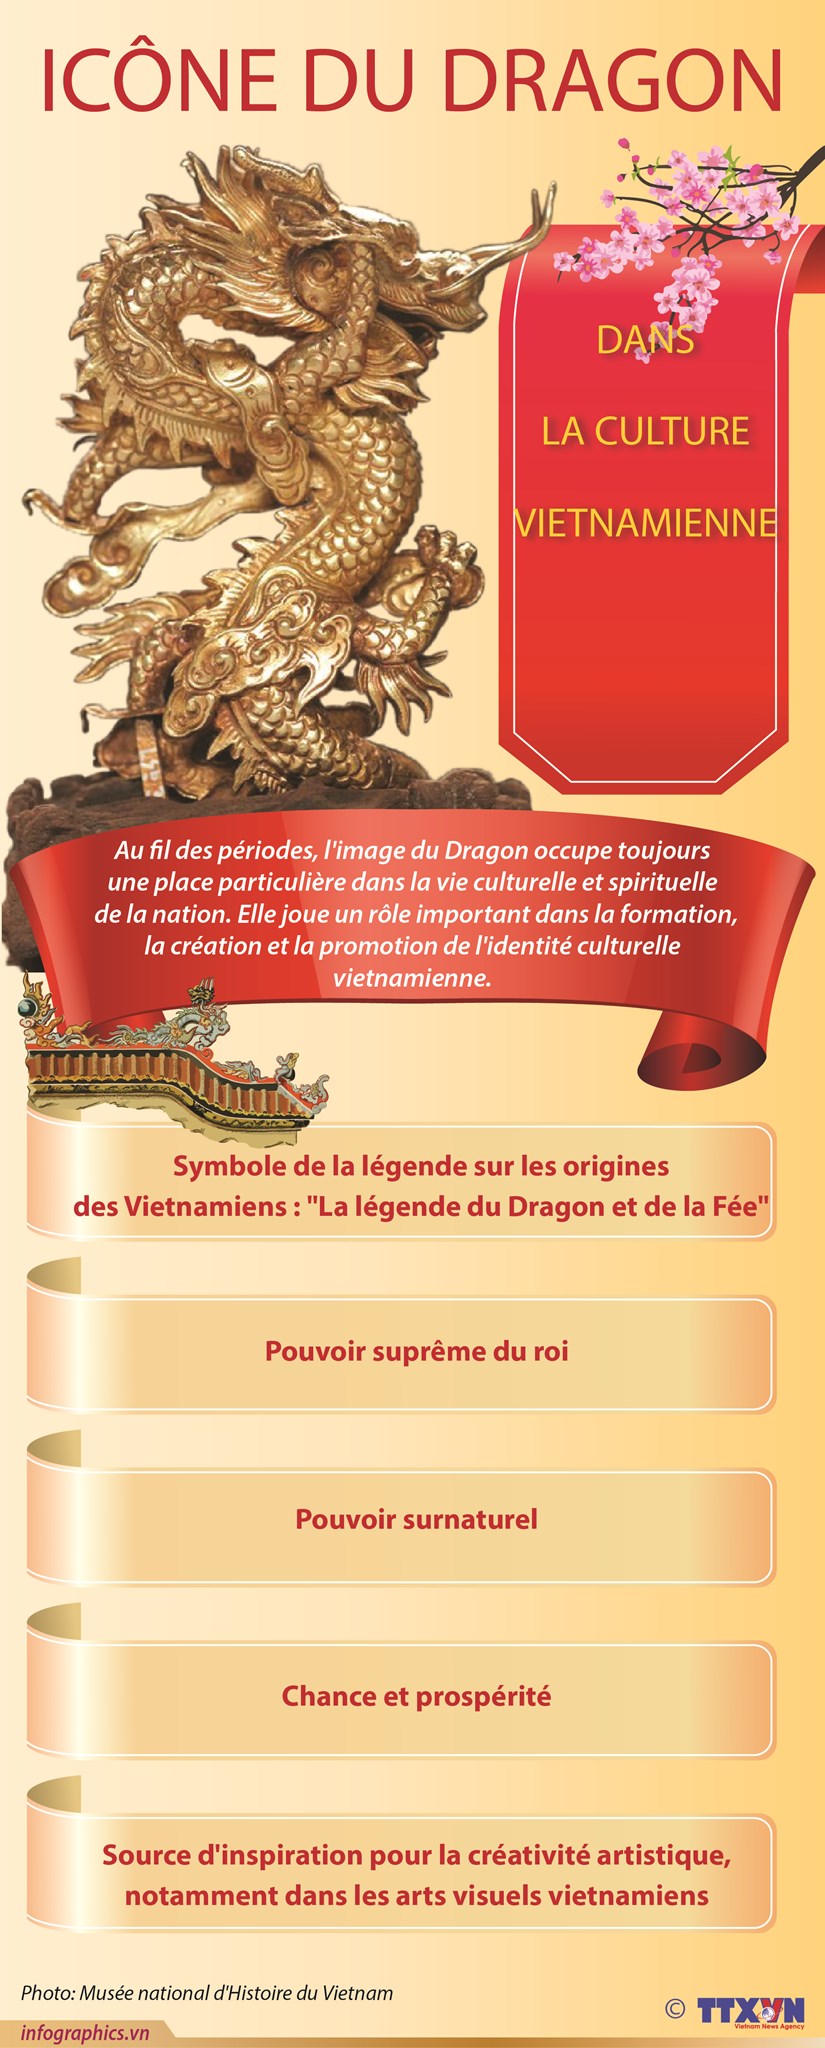 Icone du dragon dans la culture vietnamienne hinh anh 1